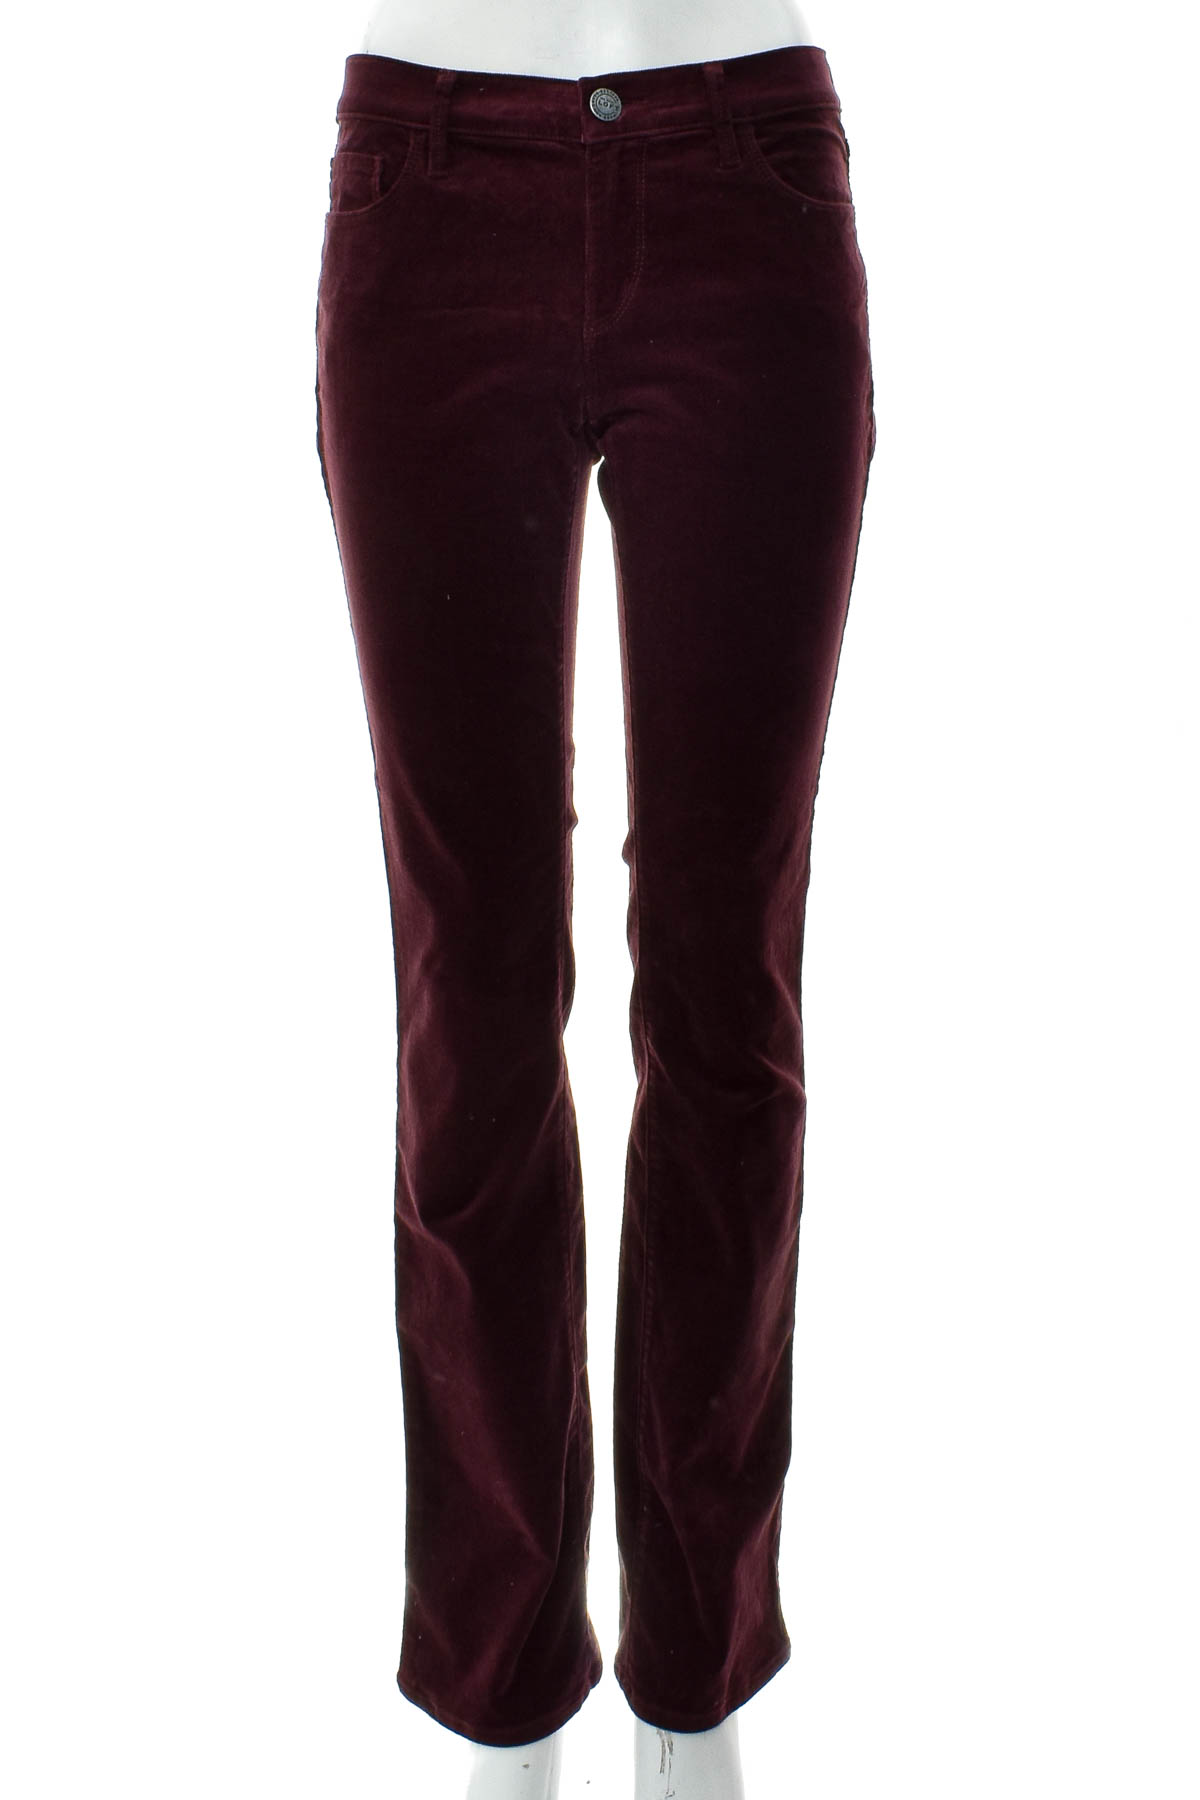 Women's trousers - ANN TAYLOR LOFT - 0